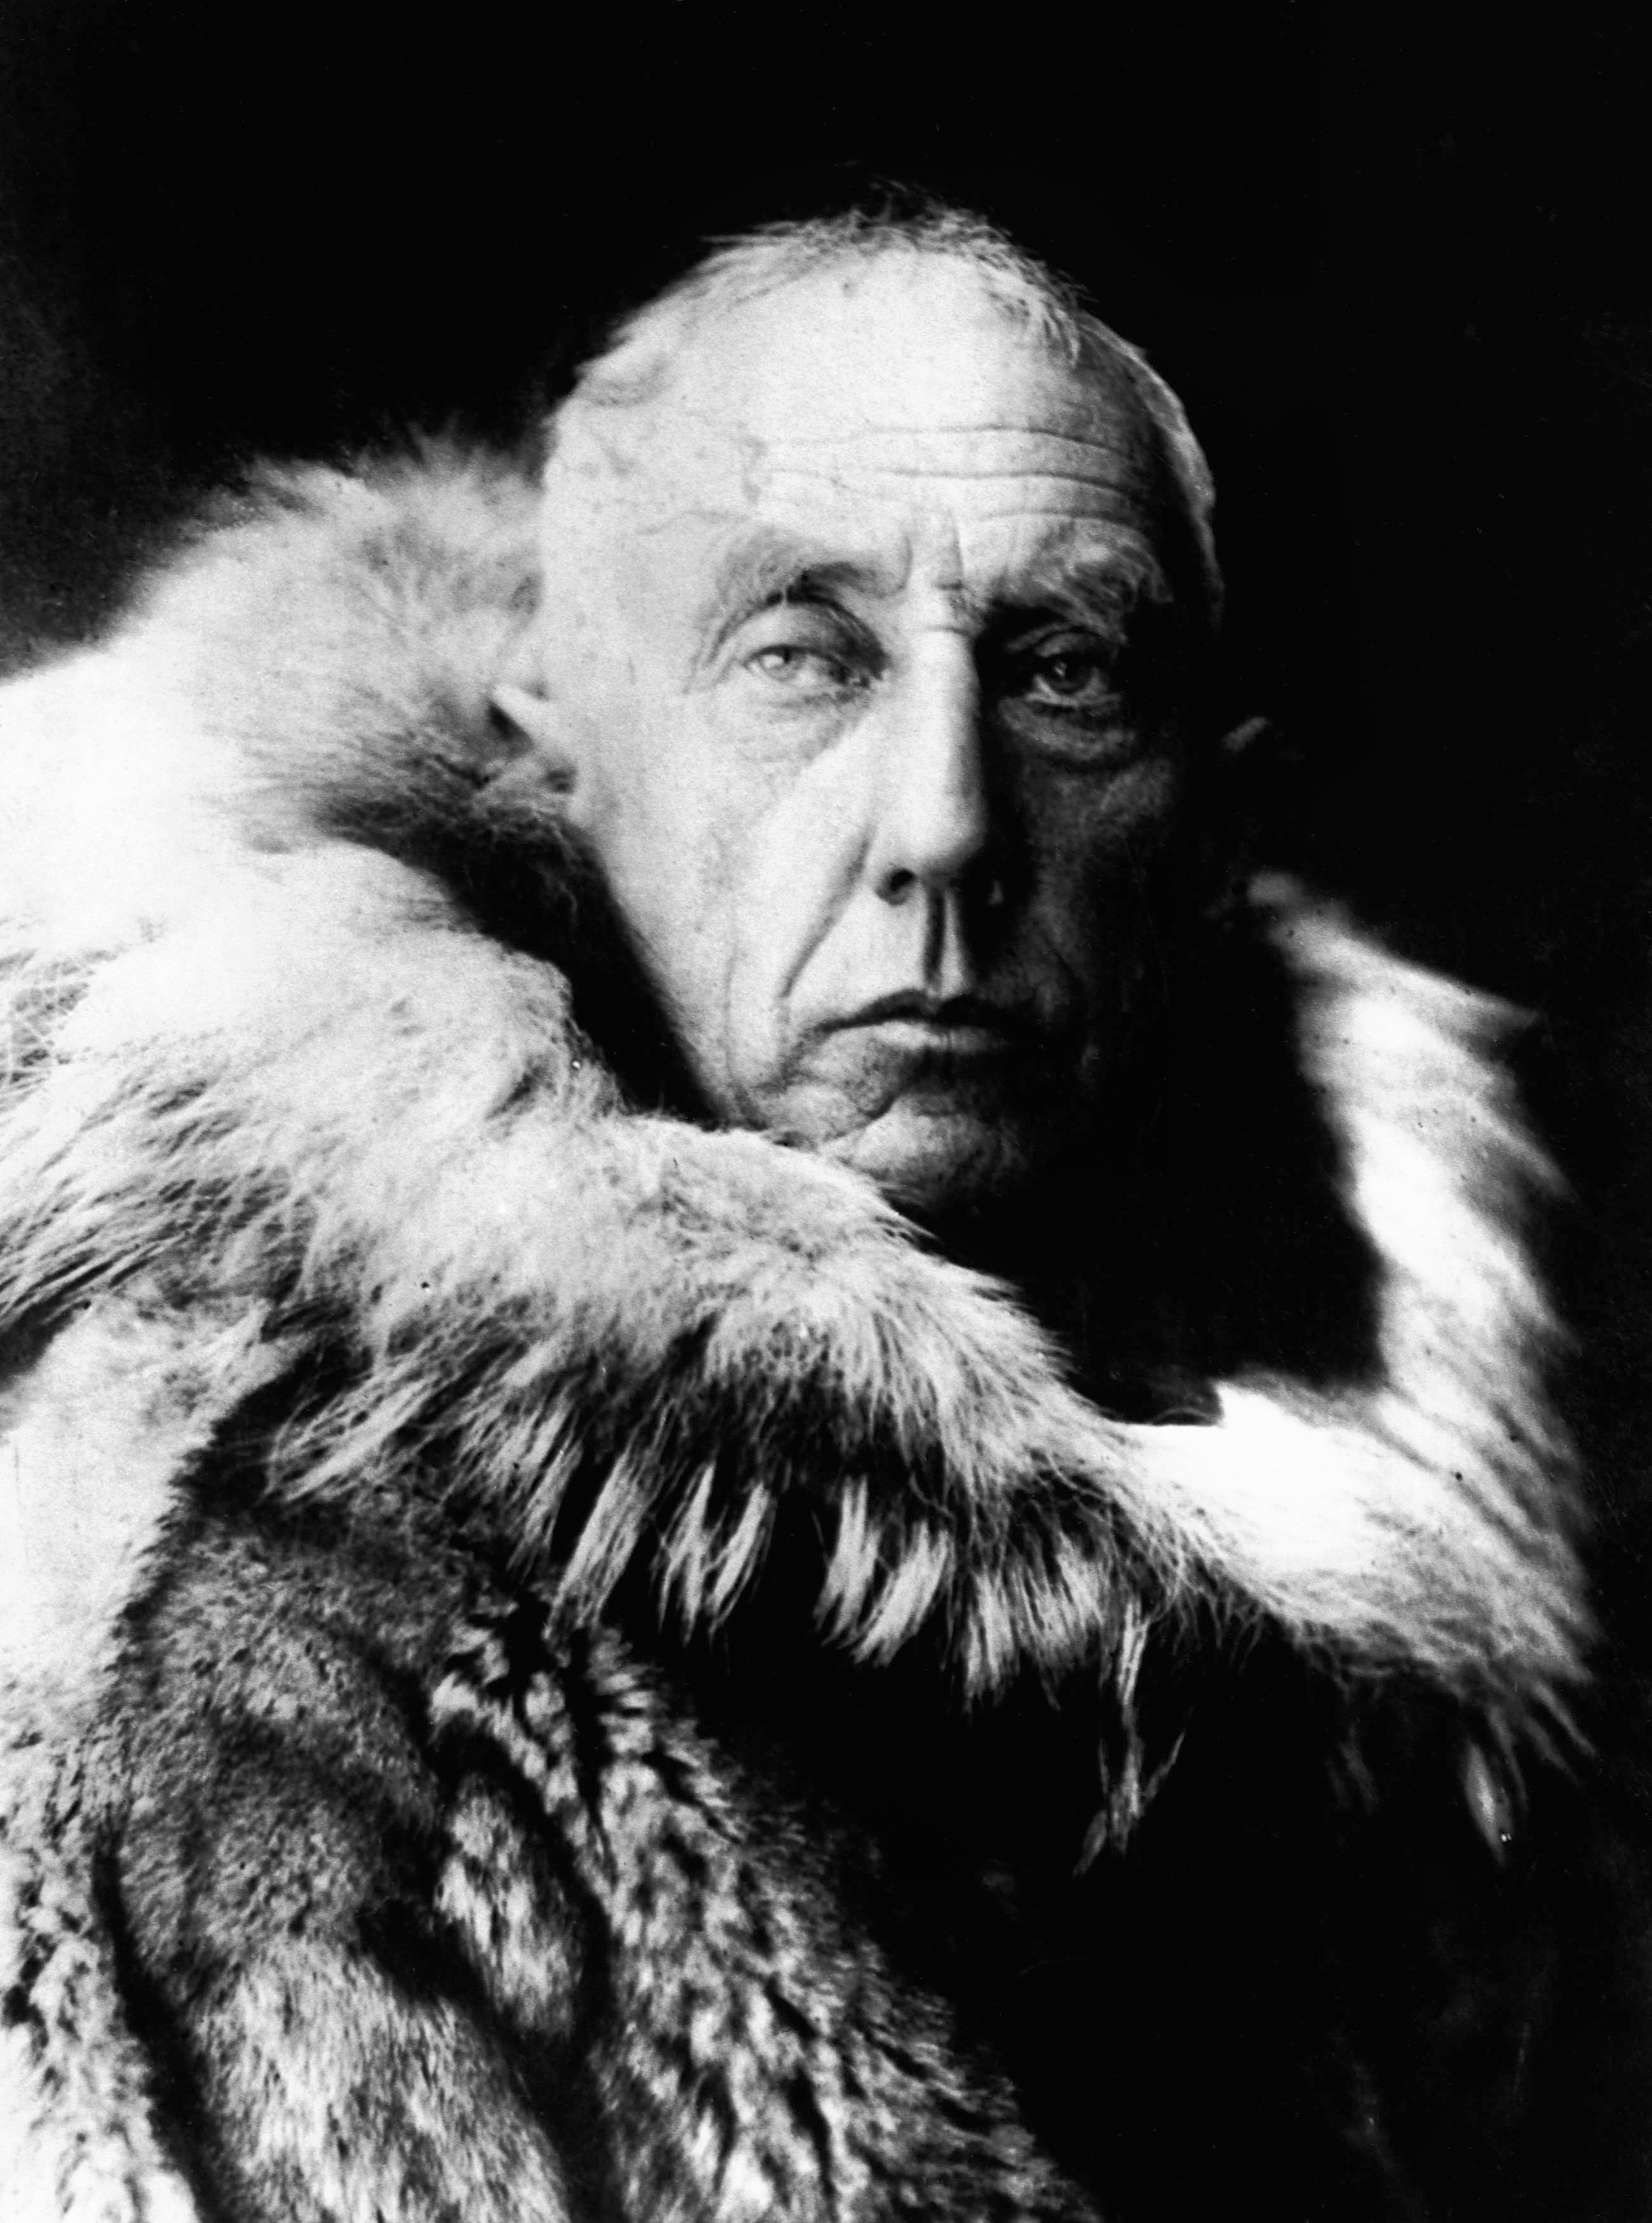  ជីវប្រវត្តិរបស់ Roald Amundsen